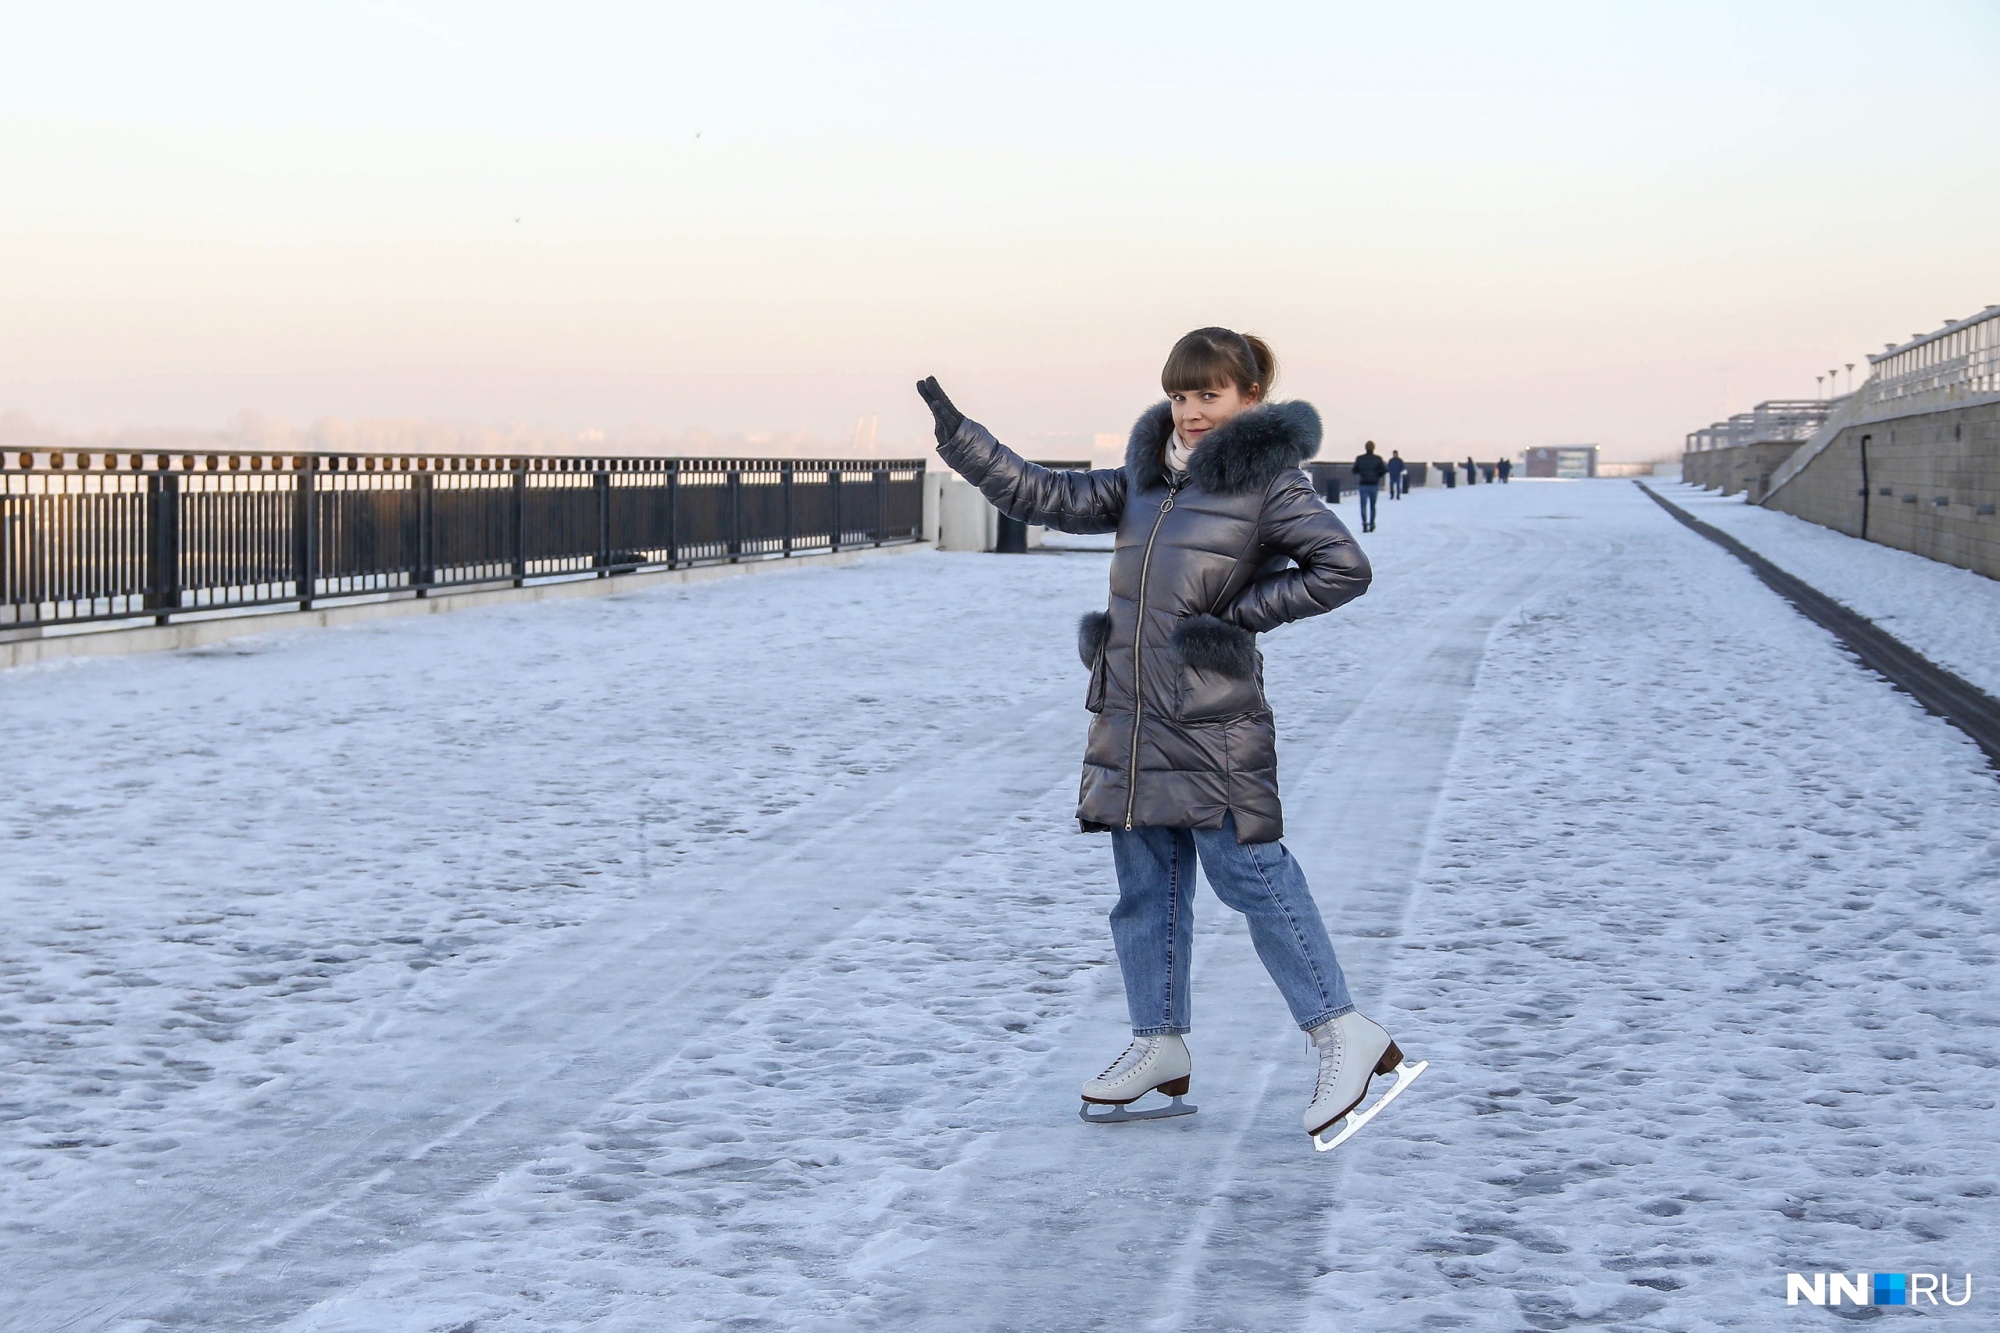 Нижне-Волжская набережная настолько скользкая, что по ней можно ездить на коньках. Тестируем лед